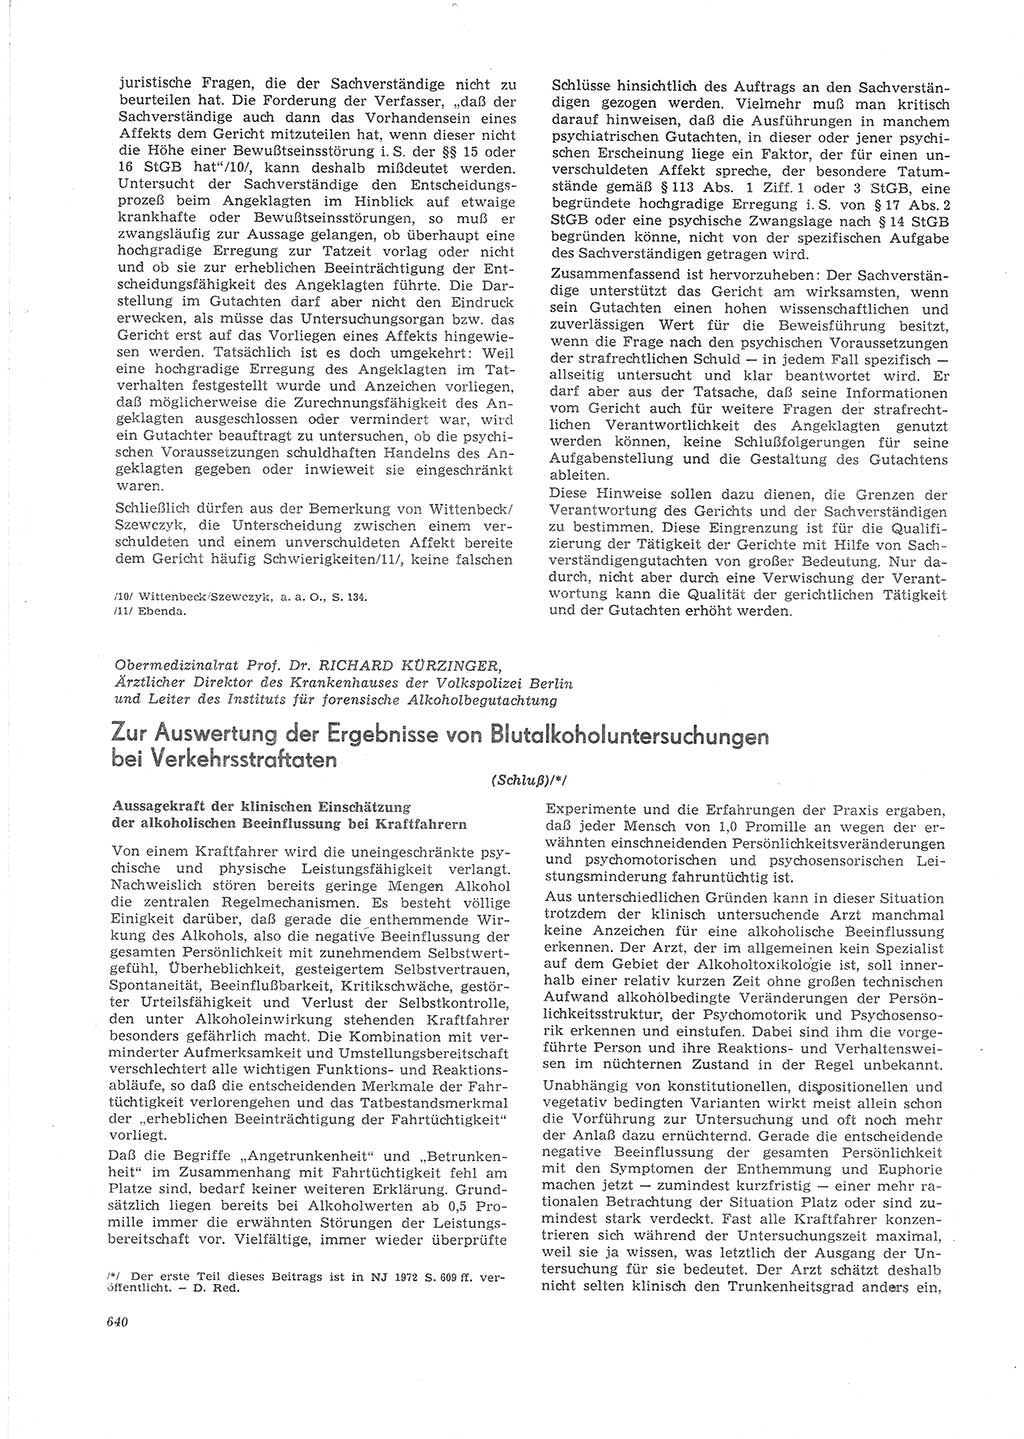 Neue Justiz (NJ), Zeitschrift für Recht und Rechtswissenschaft [Deutsche Demokratische Republik (DDR)], 26. Jahrgang 1972, Seite 640 (NJ DDR 1972, S. 640)